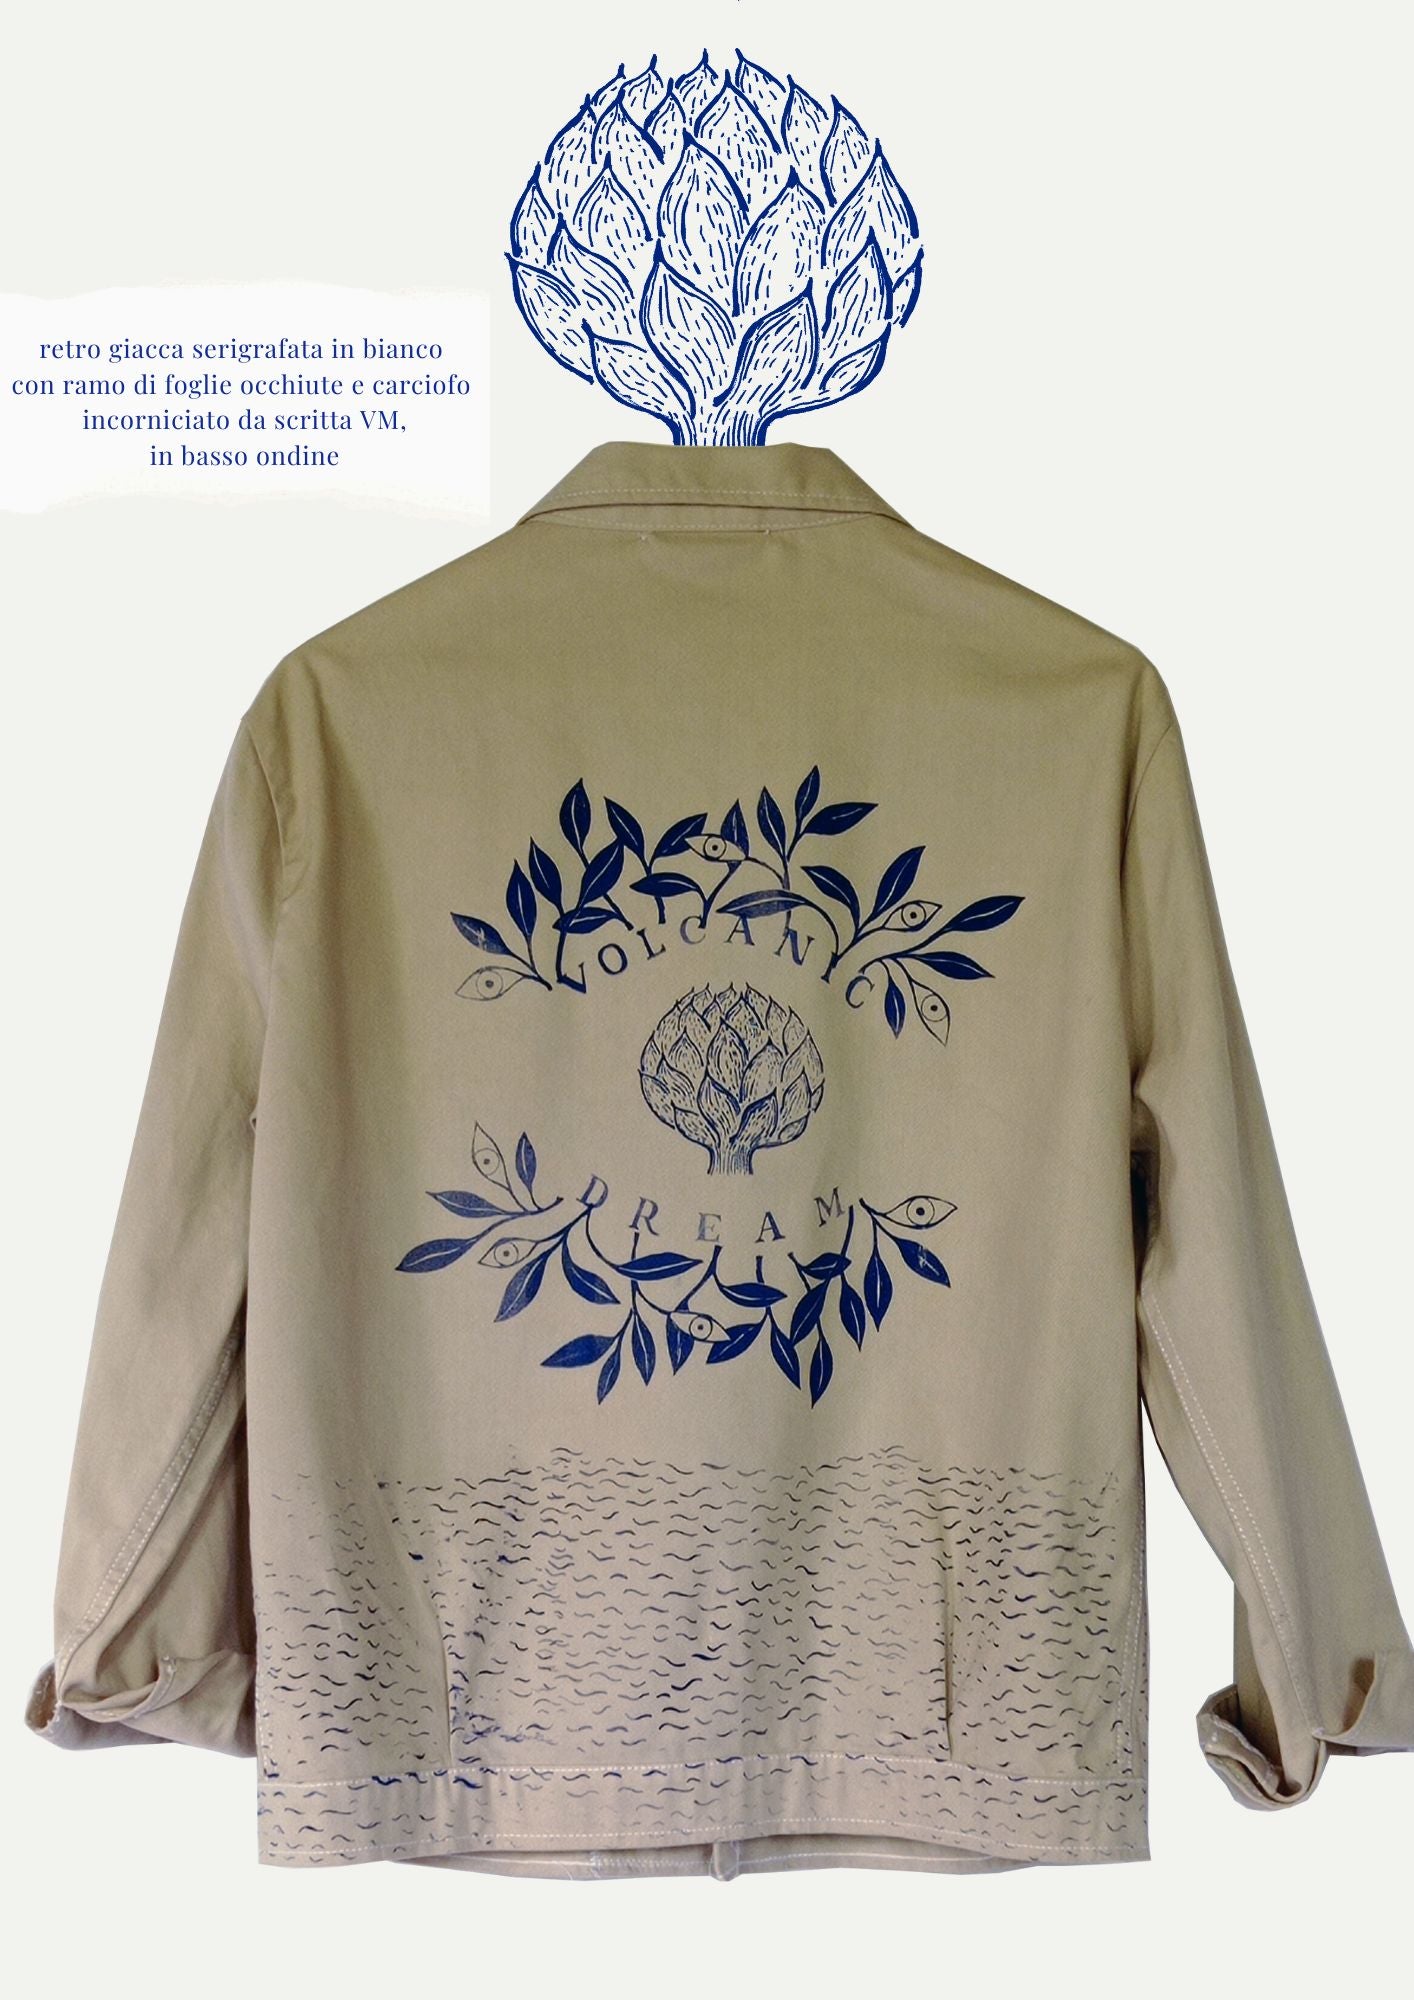 GIUBBOTTO/ SHACKET color sabbia tinto in capo serigrafata con foglie e carciofi in blu